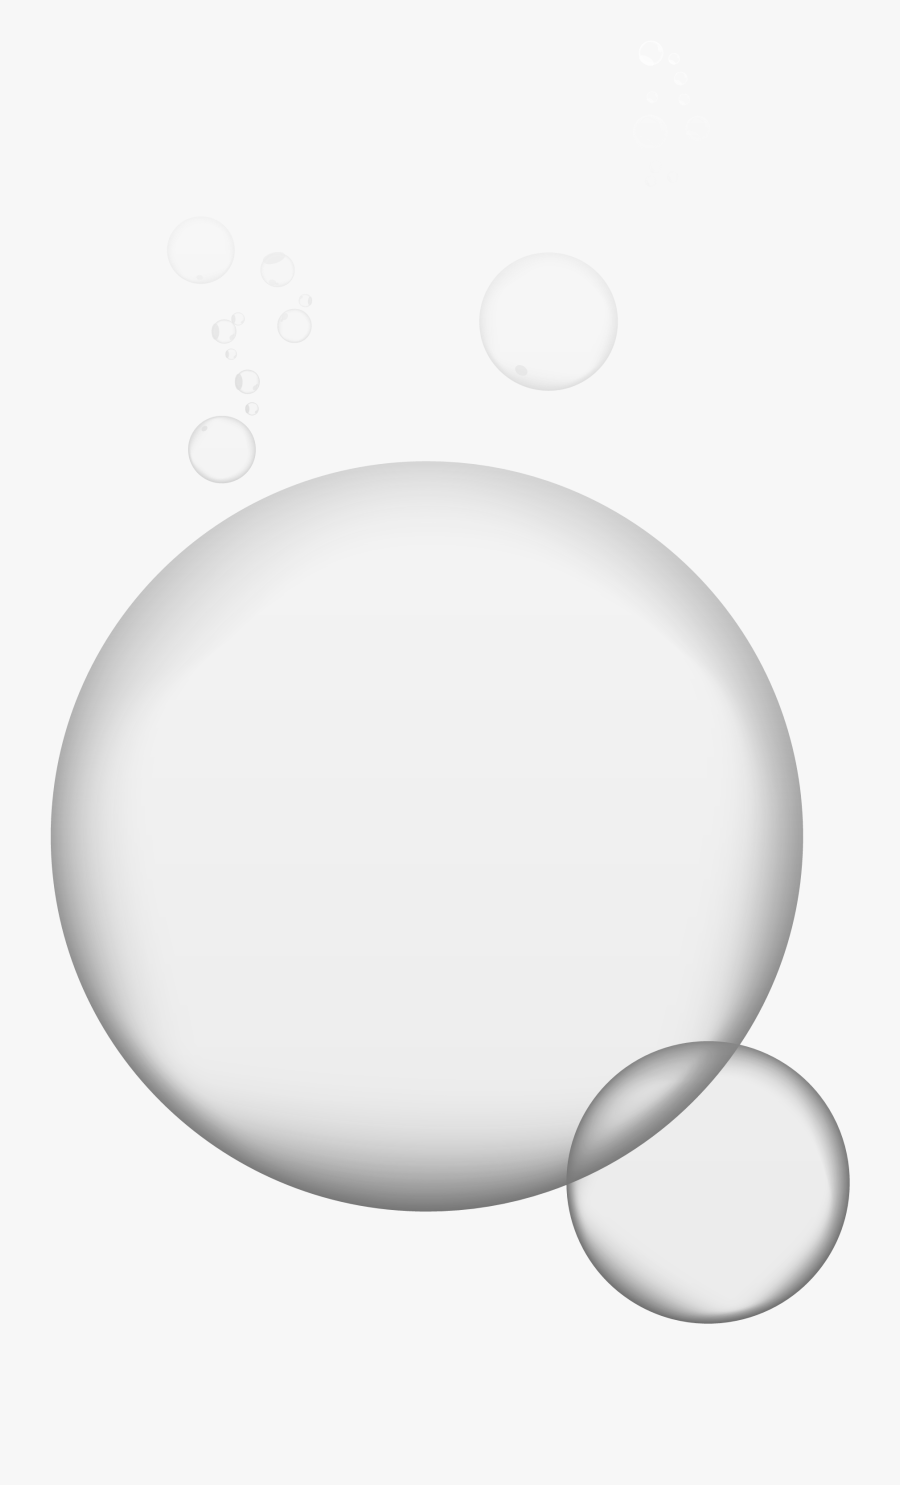 Bubbles Transparent Pictures Free - Bubble Png, Transparent Clipart